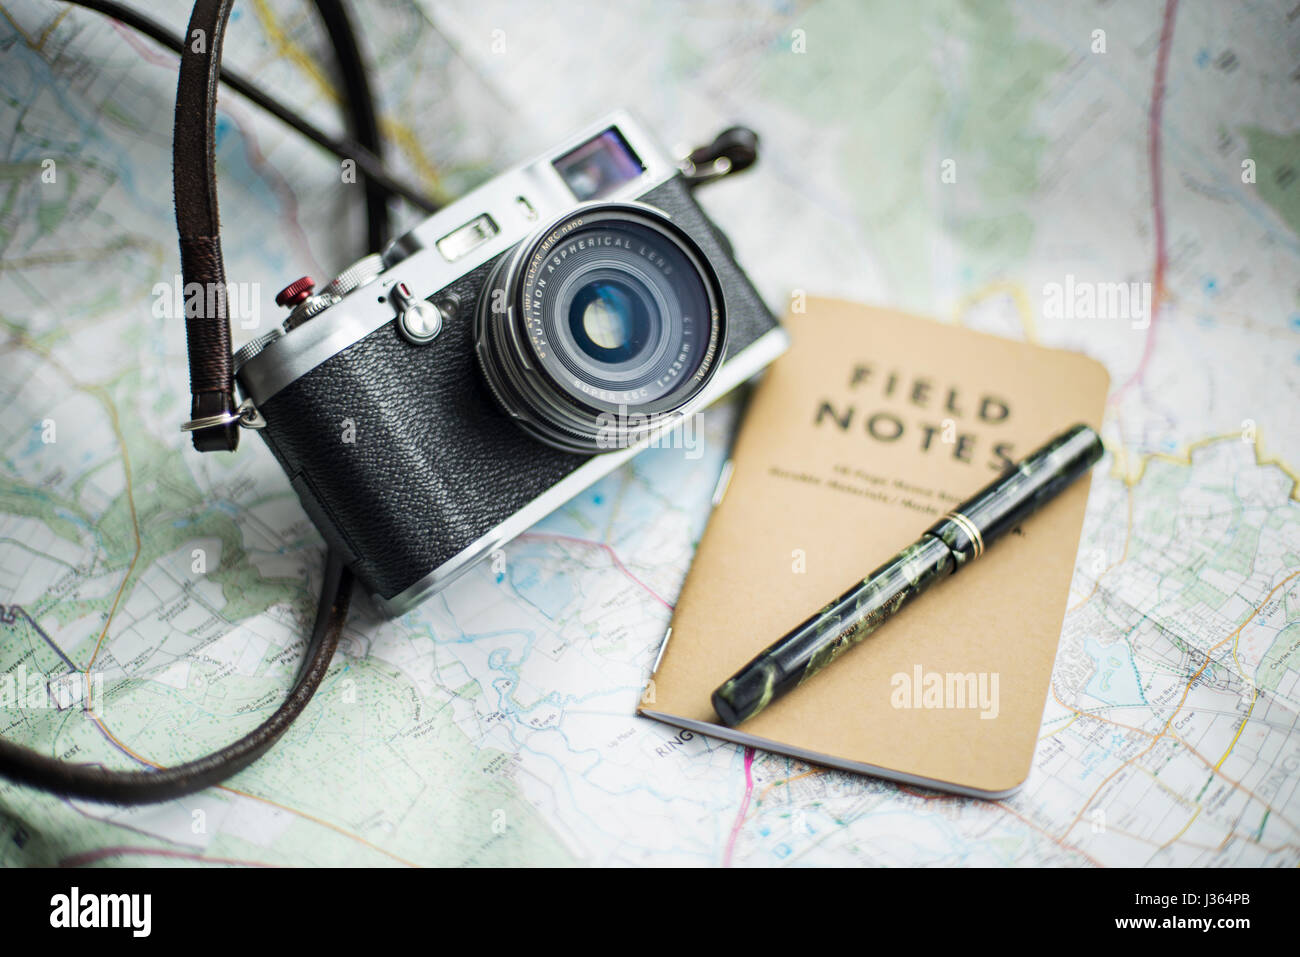 Fuji x100 fotocamera sulla mappa con il campo Note e notebook green Mabie Todd vintage fountain pen. Foto Stock